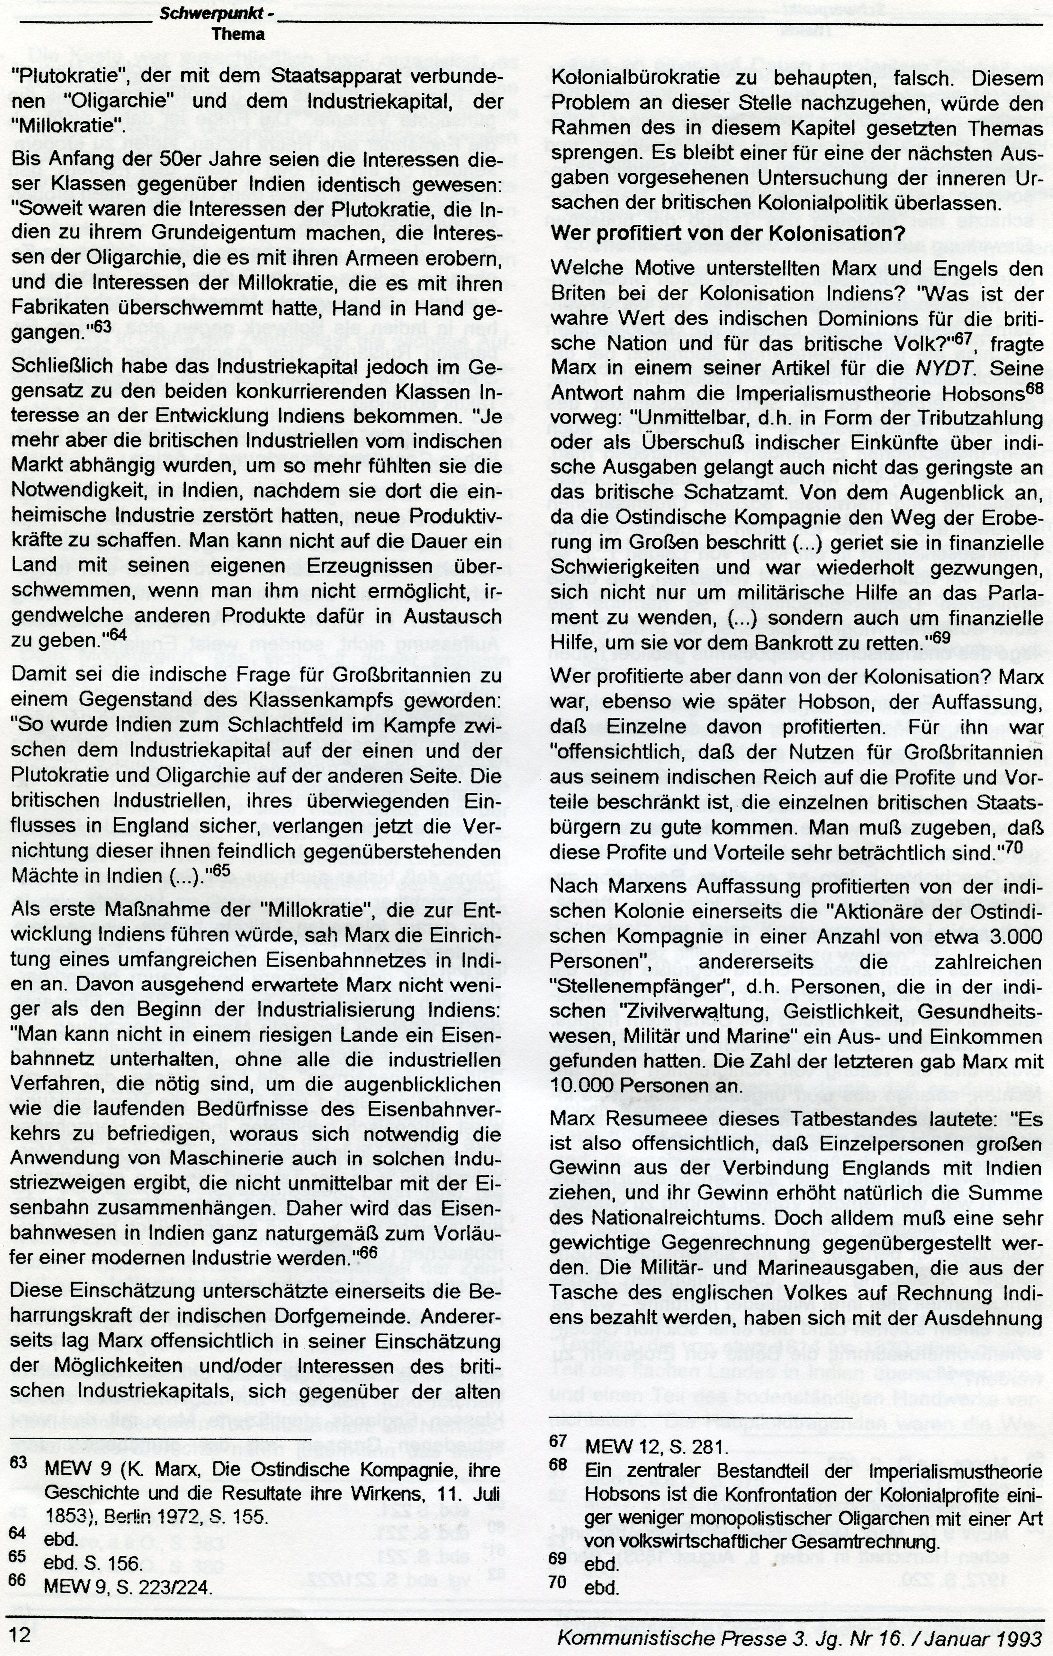 Gelsenkirchen_Kommunistische_Presse_1993_16_Beilage_012